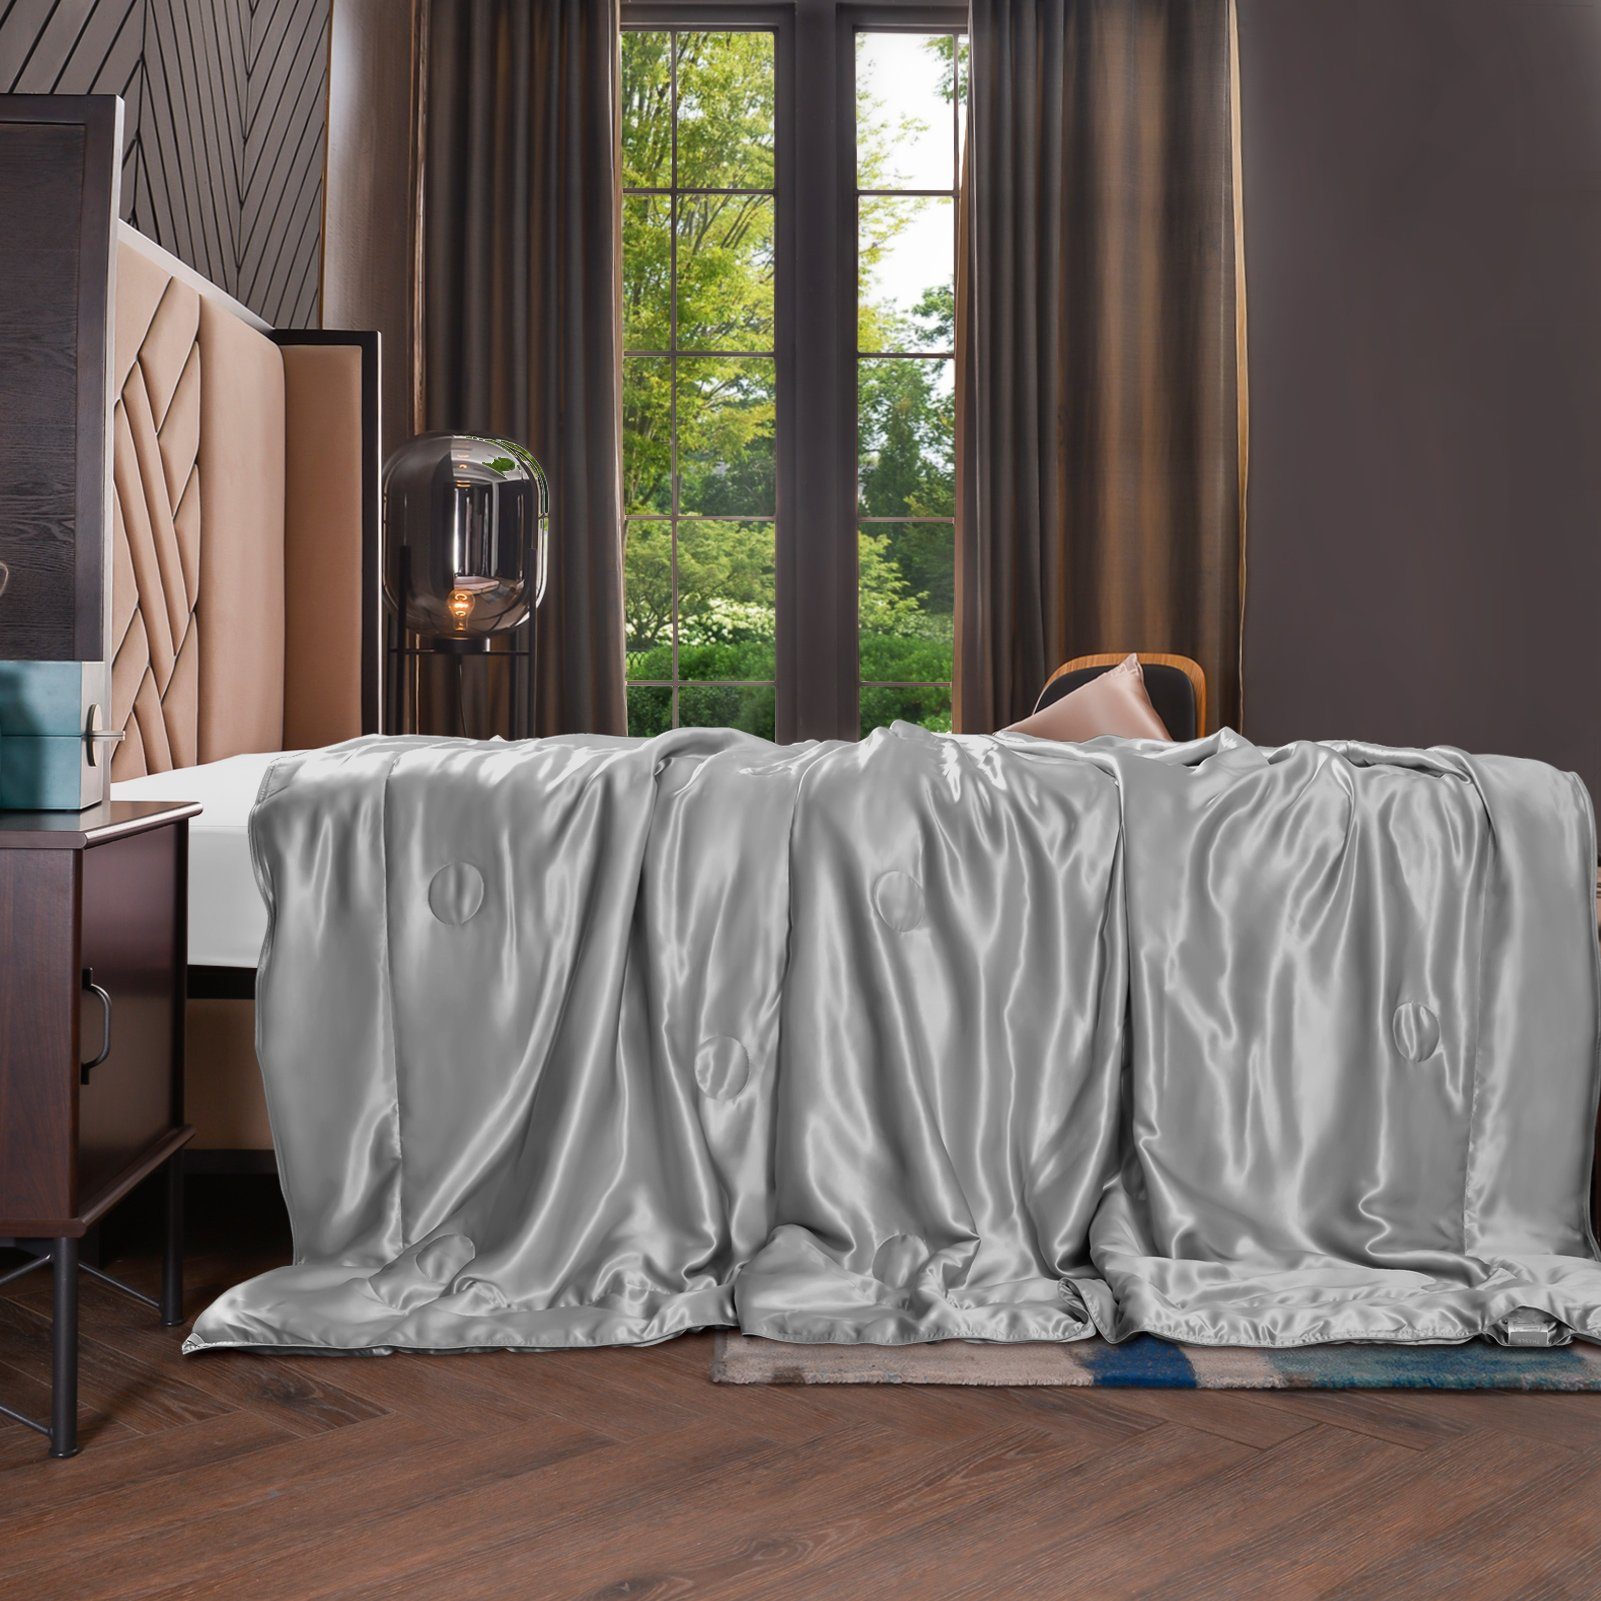 Sommerbettdecke, 135x180 cm, THXSILK, Füllung: 100% Seide, Bezug: 100% Seide, kühlend, leicht, hautfreundlich Grau | Naturfaserdecken